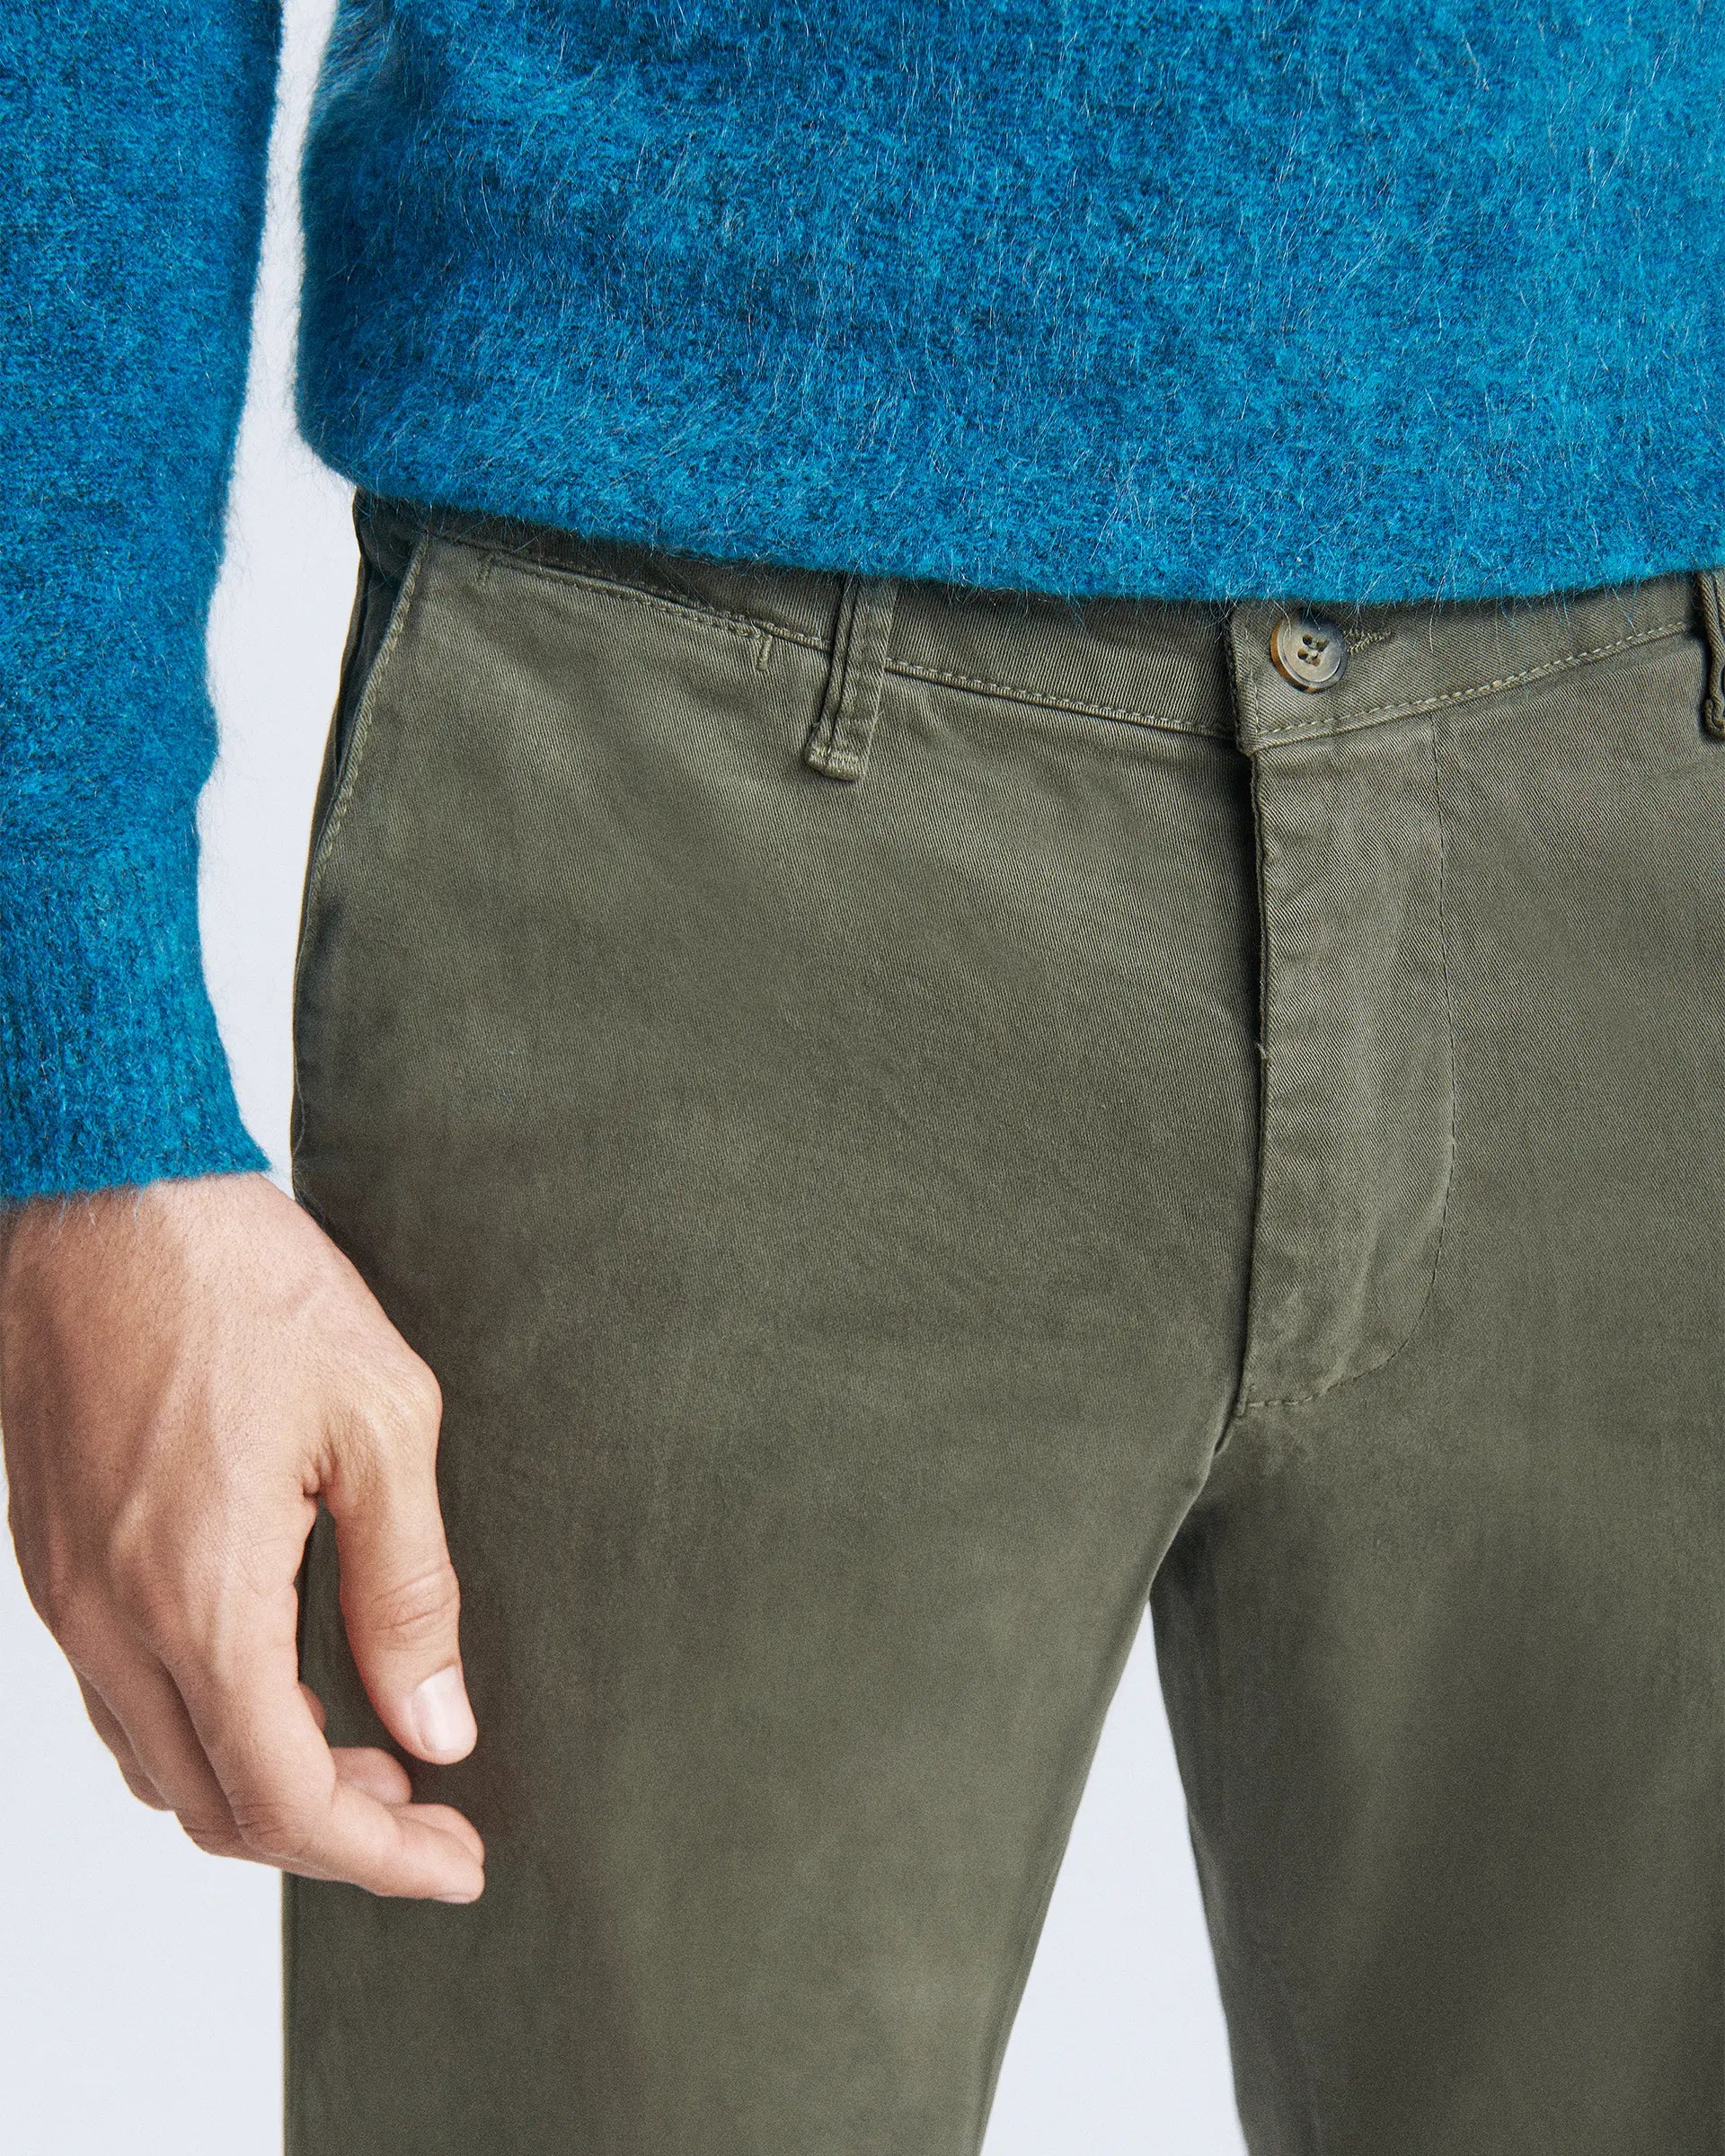 Pantalone verde militare in cotone stretch tinto in capo